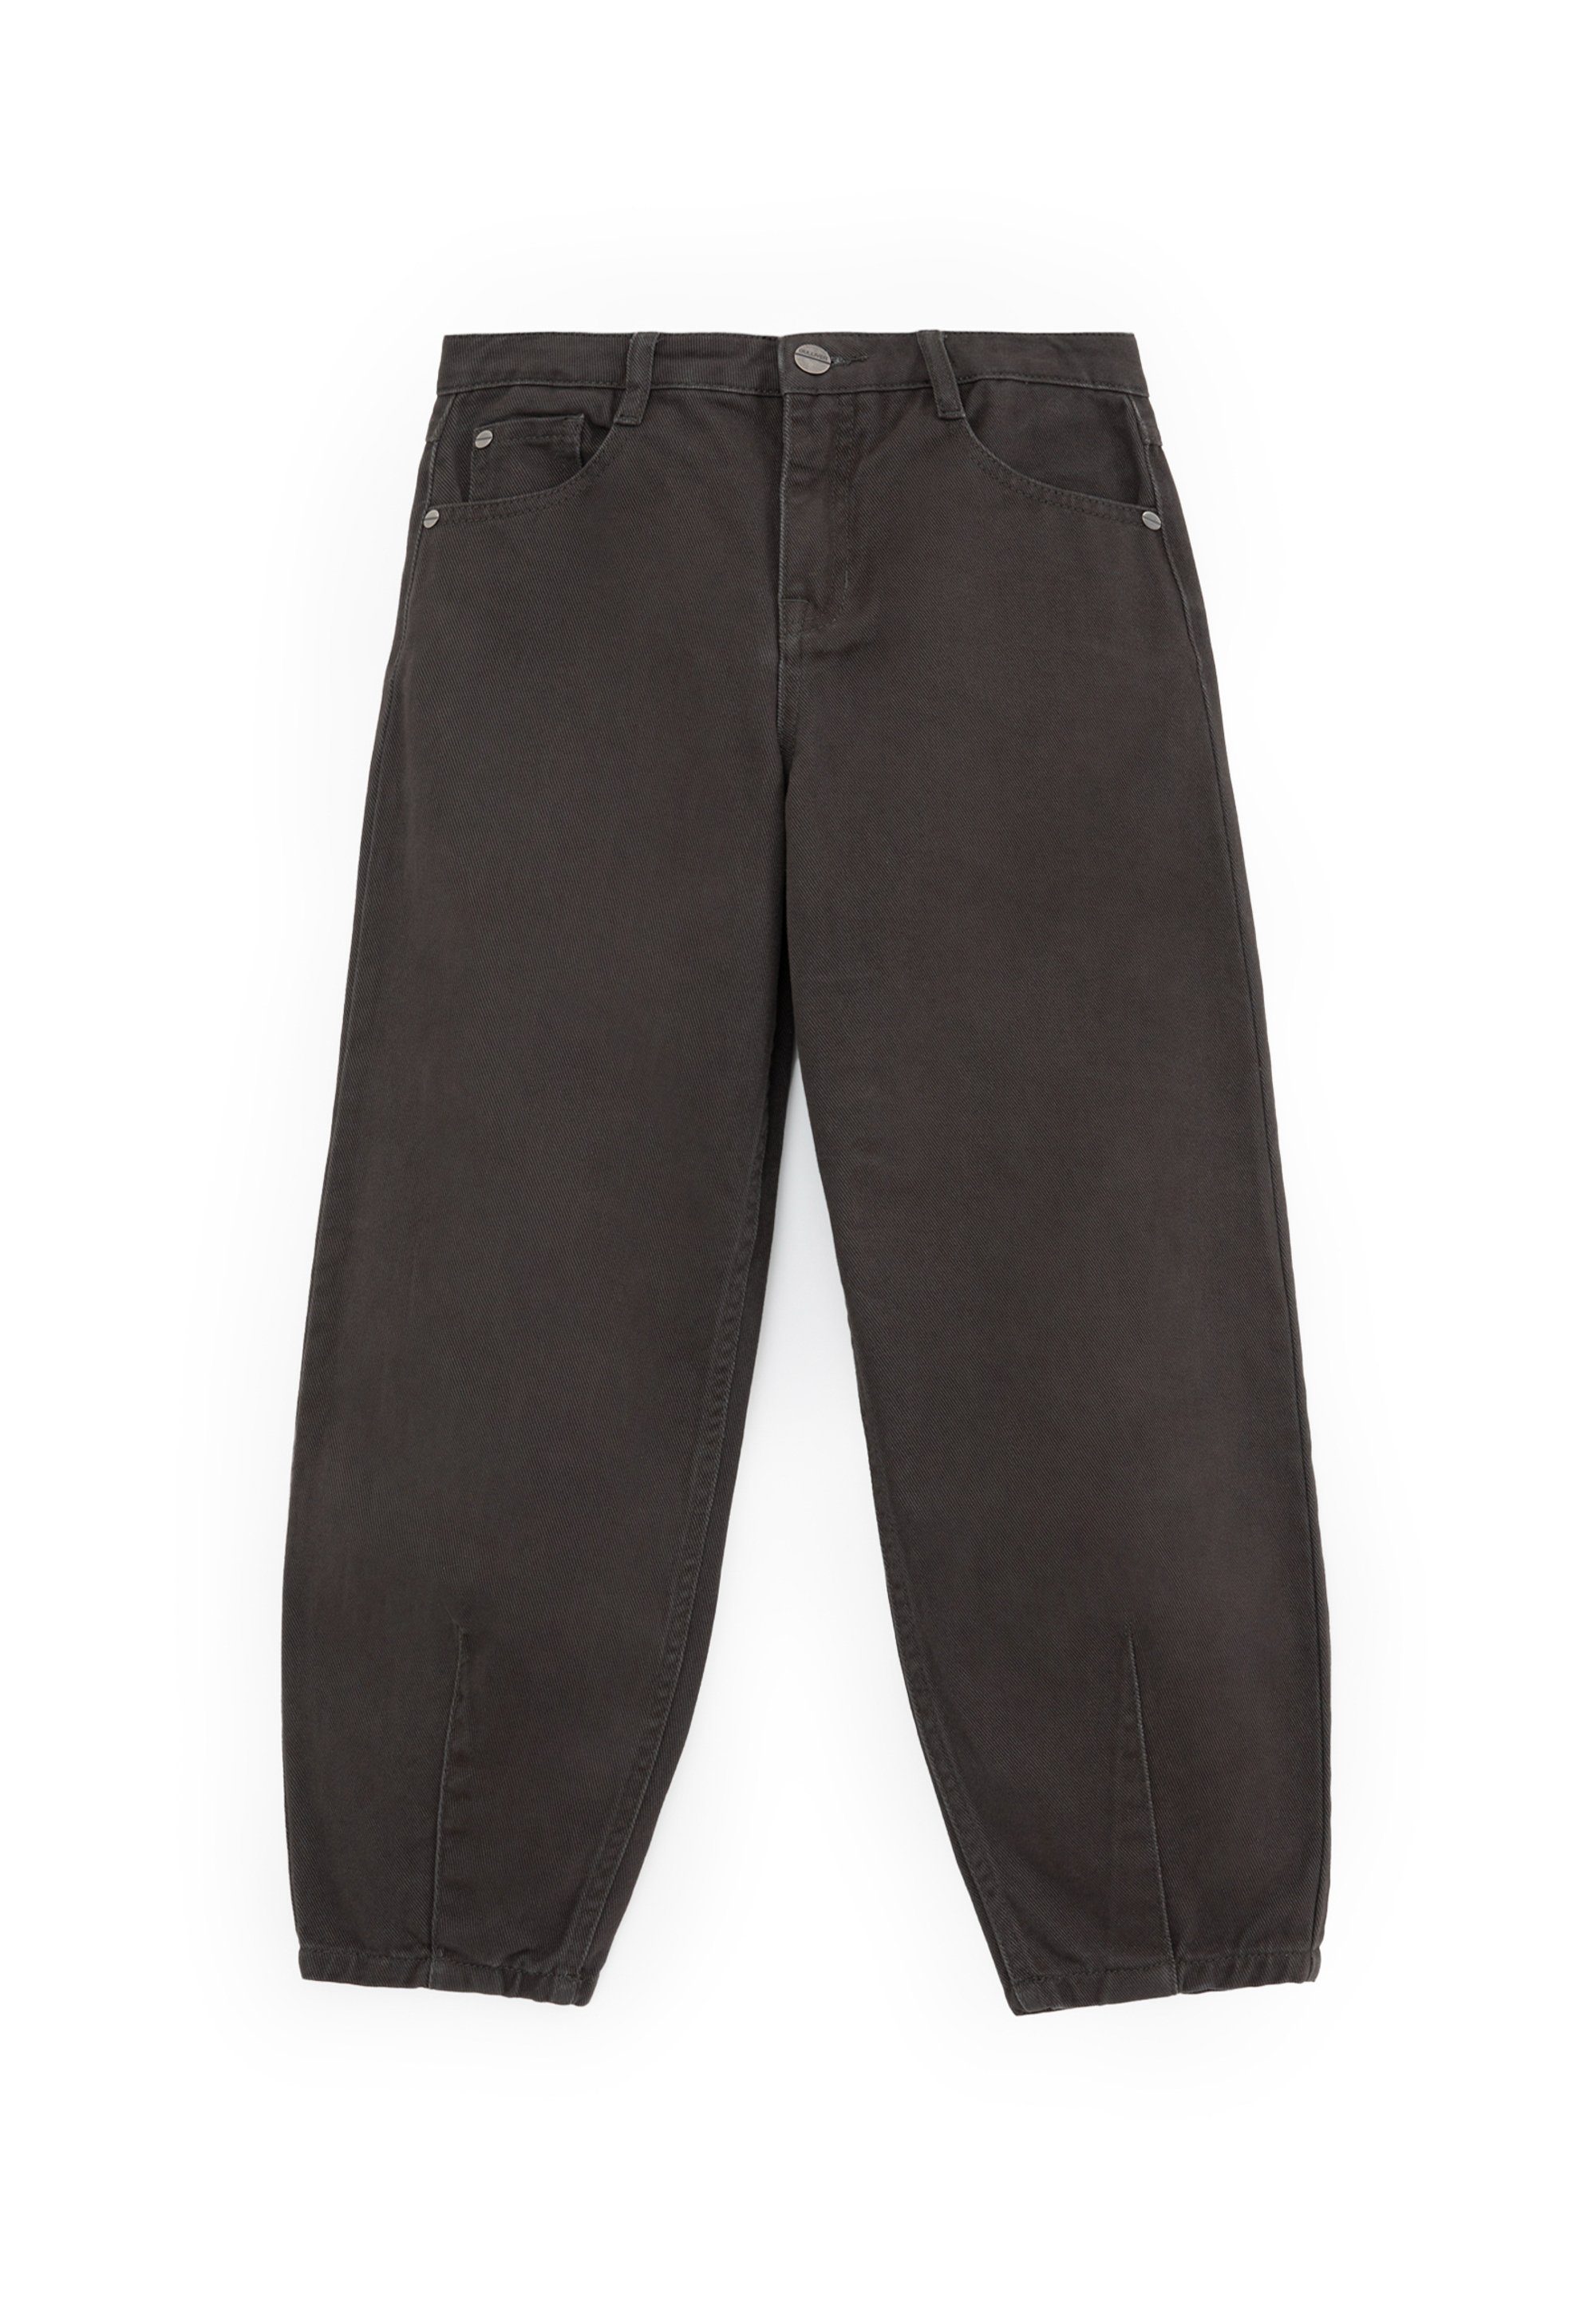 Kinder Teens (Gr. 128 - 182) Gulliver Bequeme Jeans im 5-Pocket-Stil